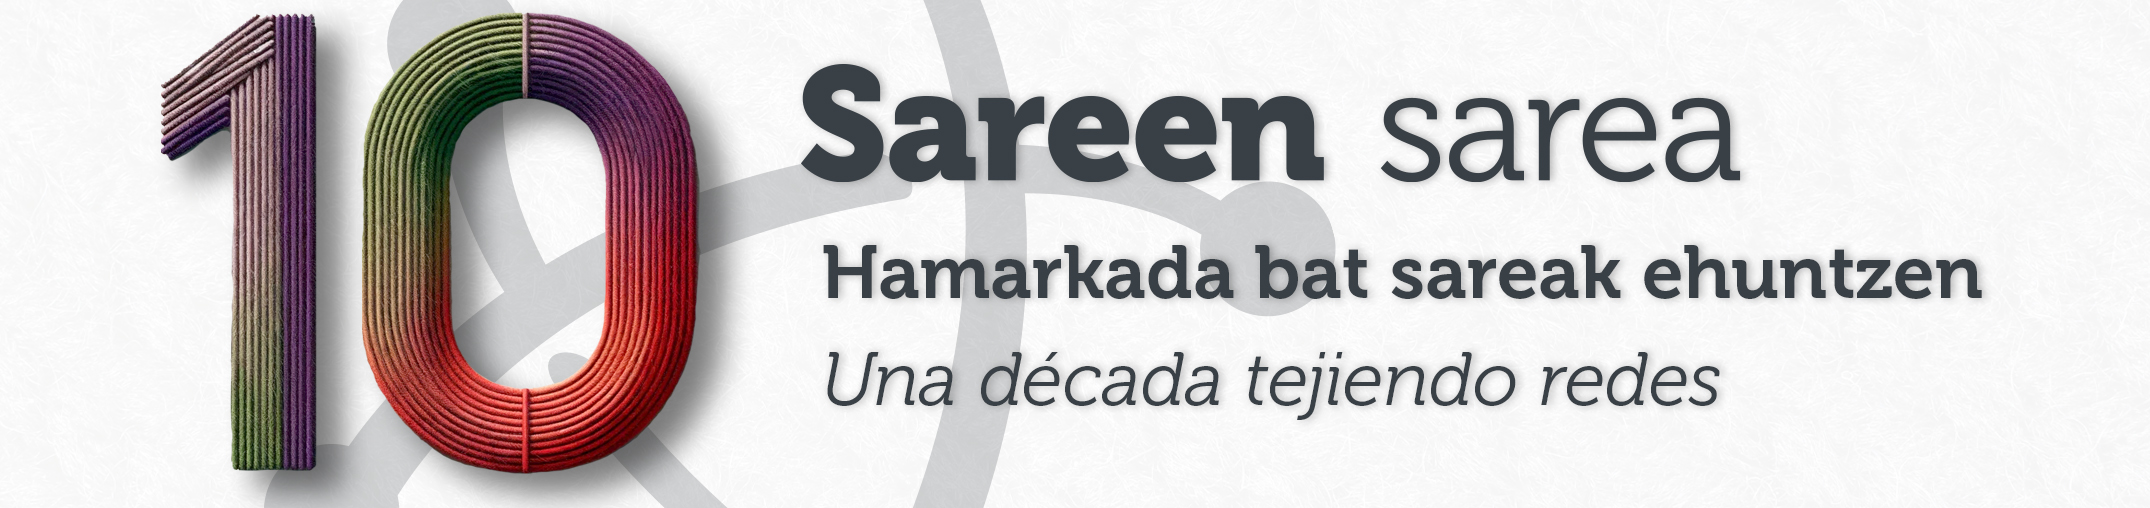 Sareen Sarea: 10 años tejiendo redes